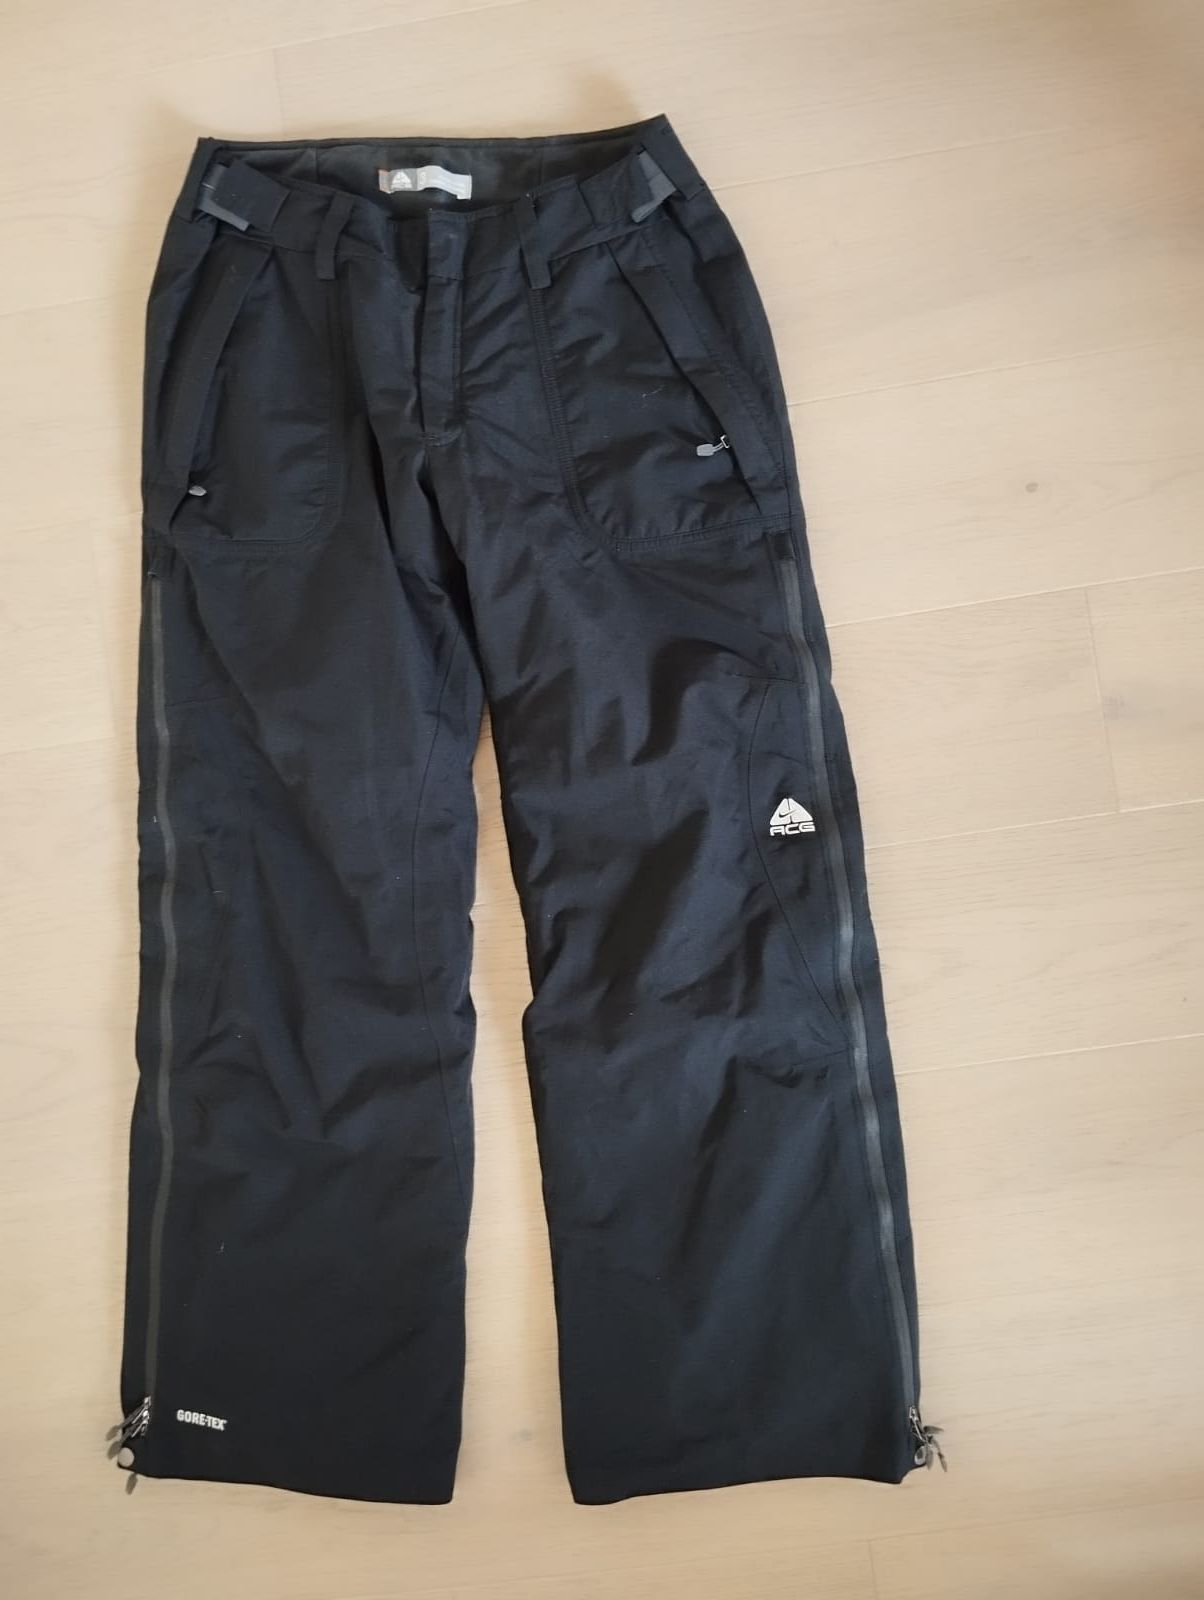 Spodnie snowboardowe Nike L czarne gore tex